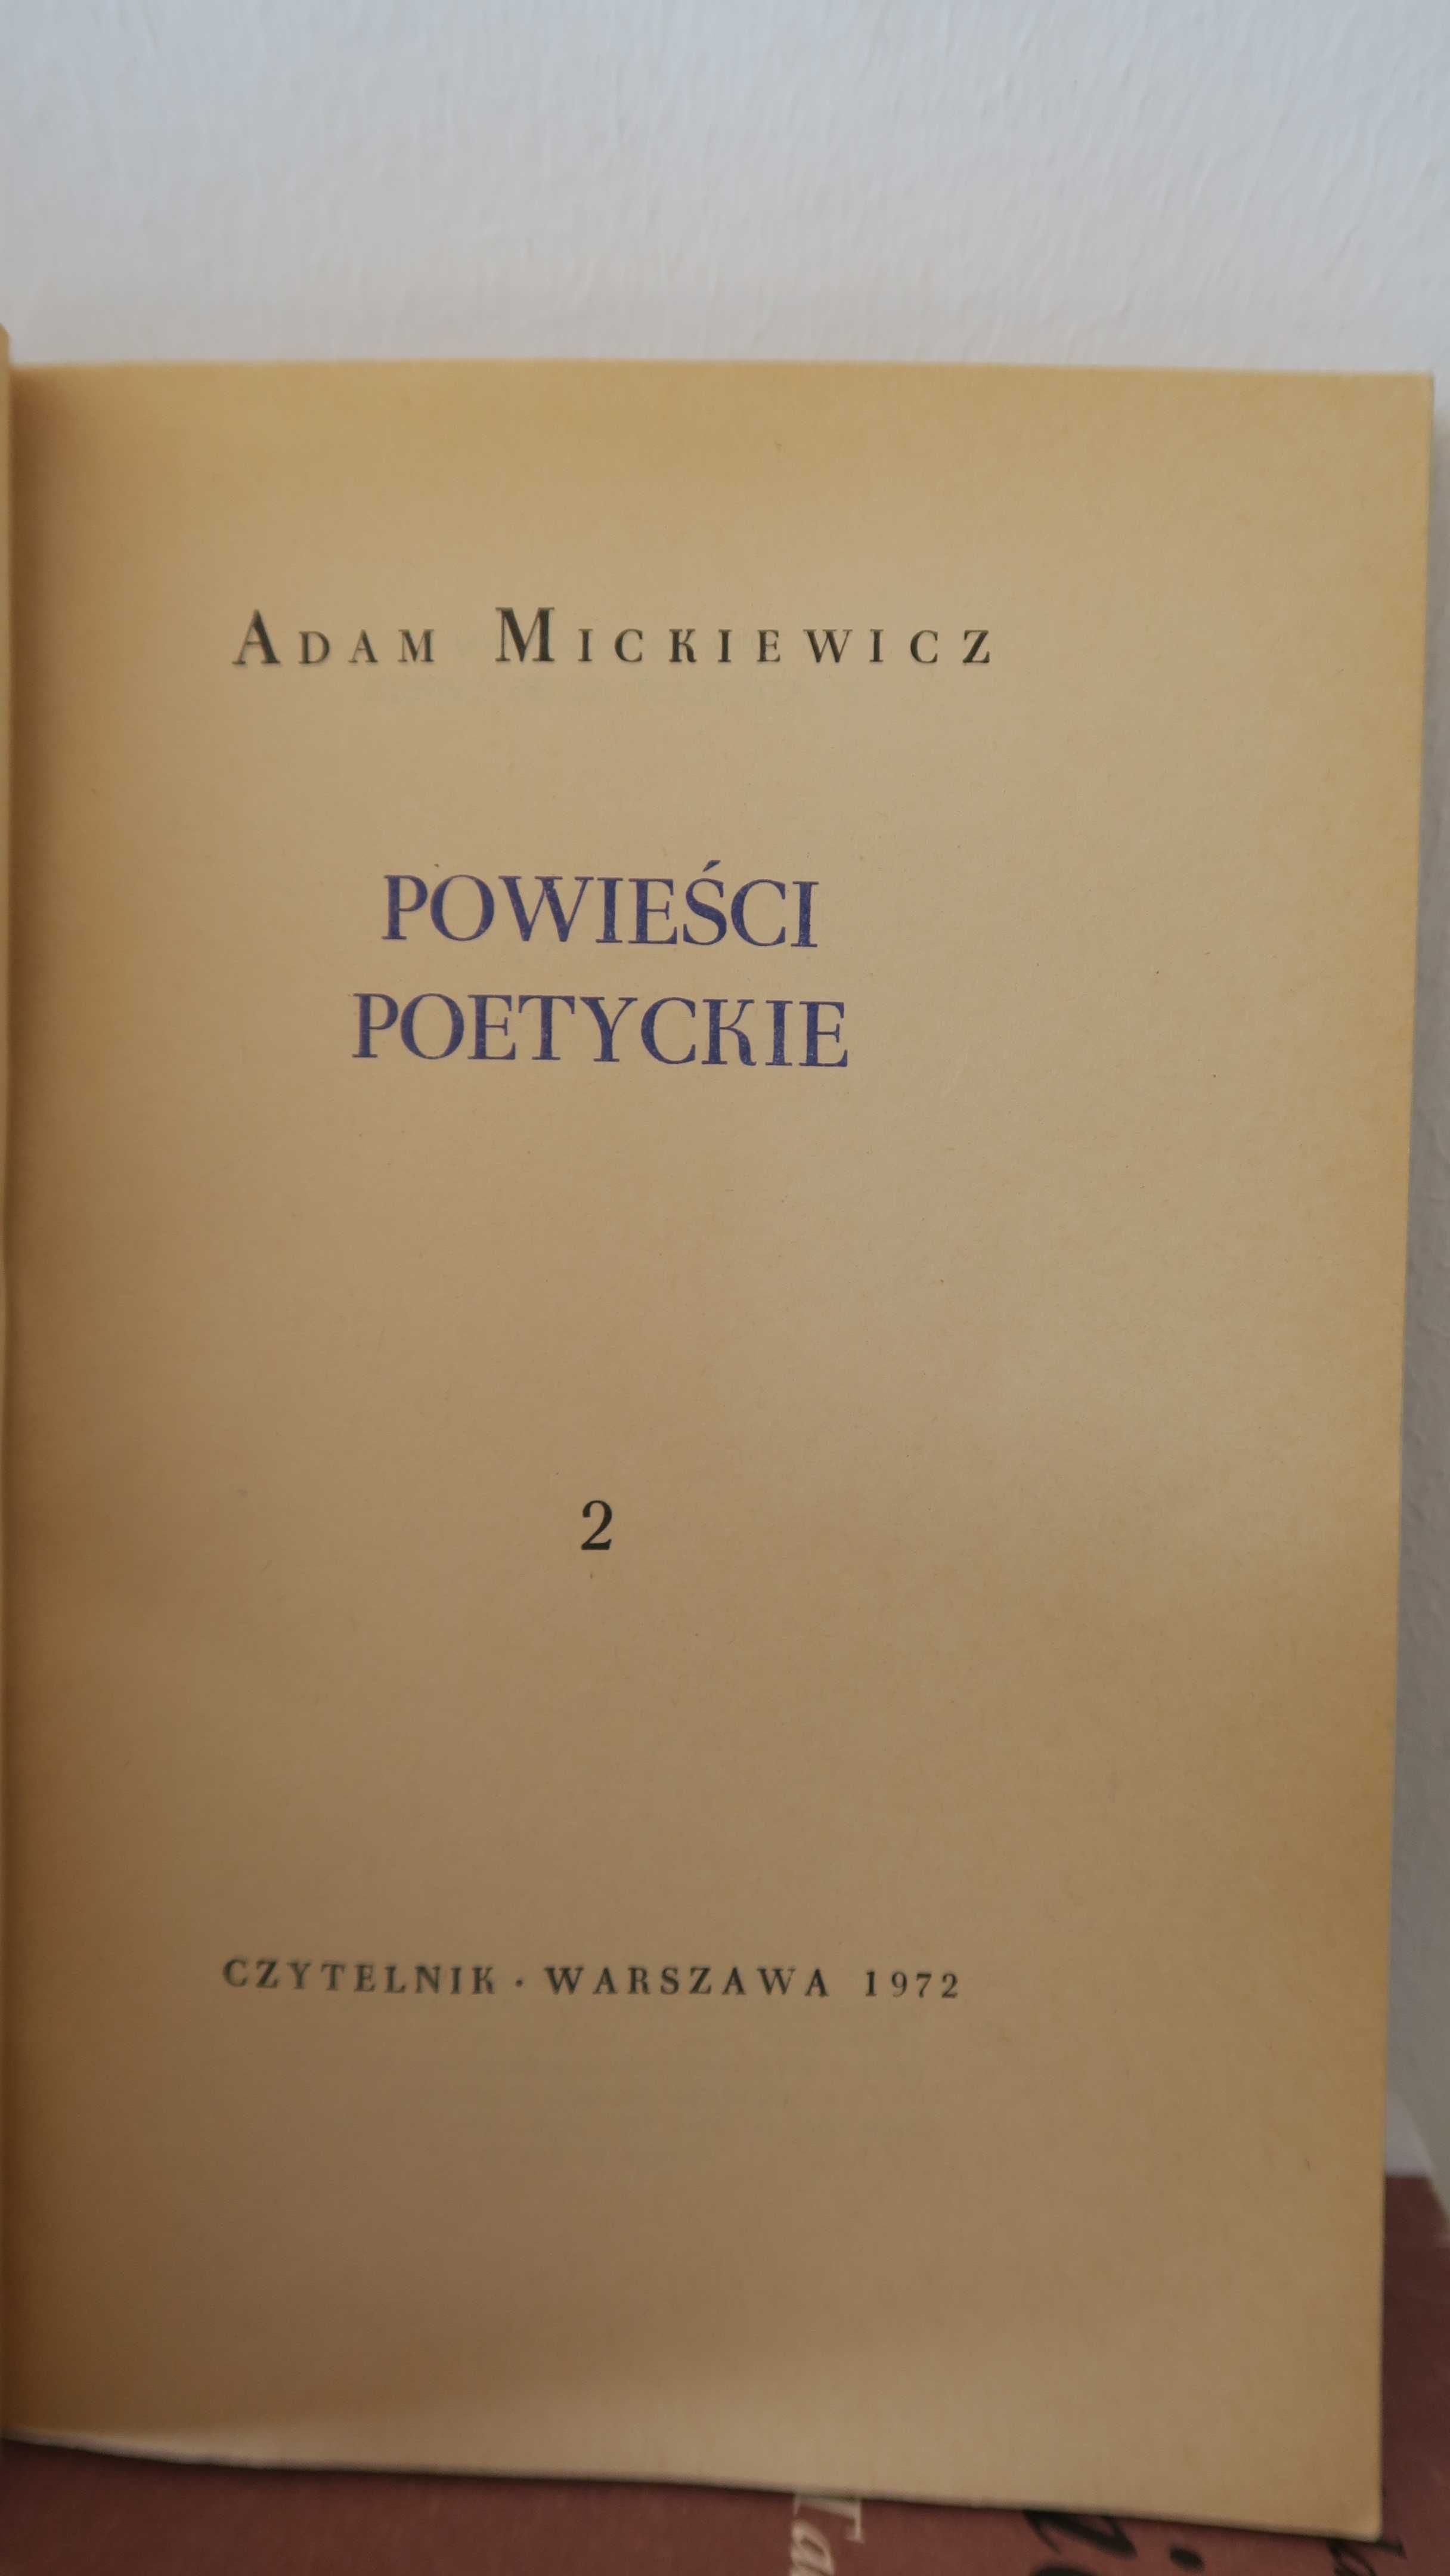 Dzieła A. Mickiewicz Pan Tadeusz + powieści poetyckie + dramaty 3 tomy